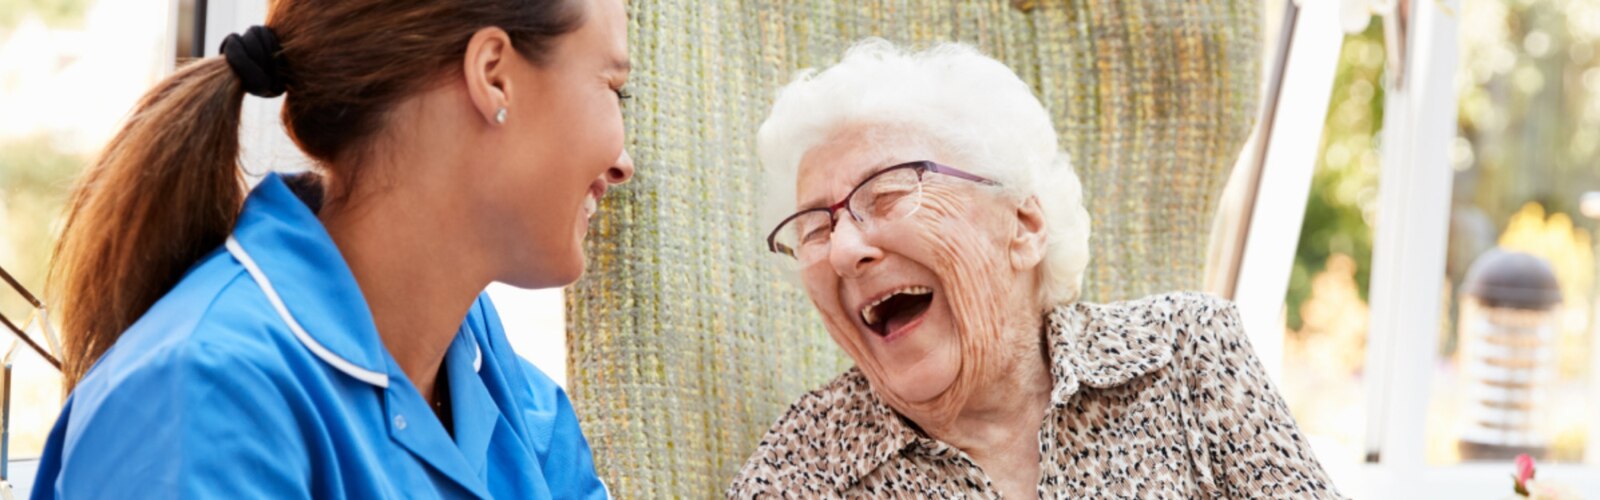 En sygeplejerske og en ældre kvinde griner sammen